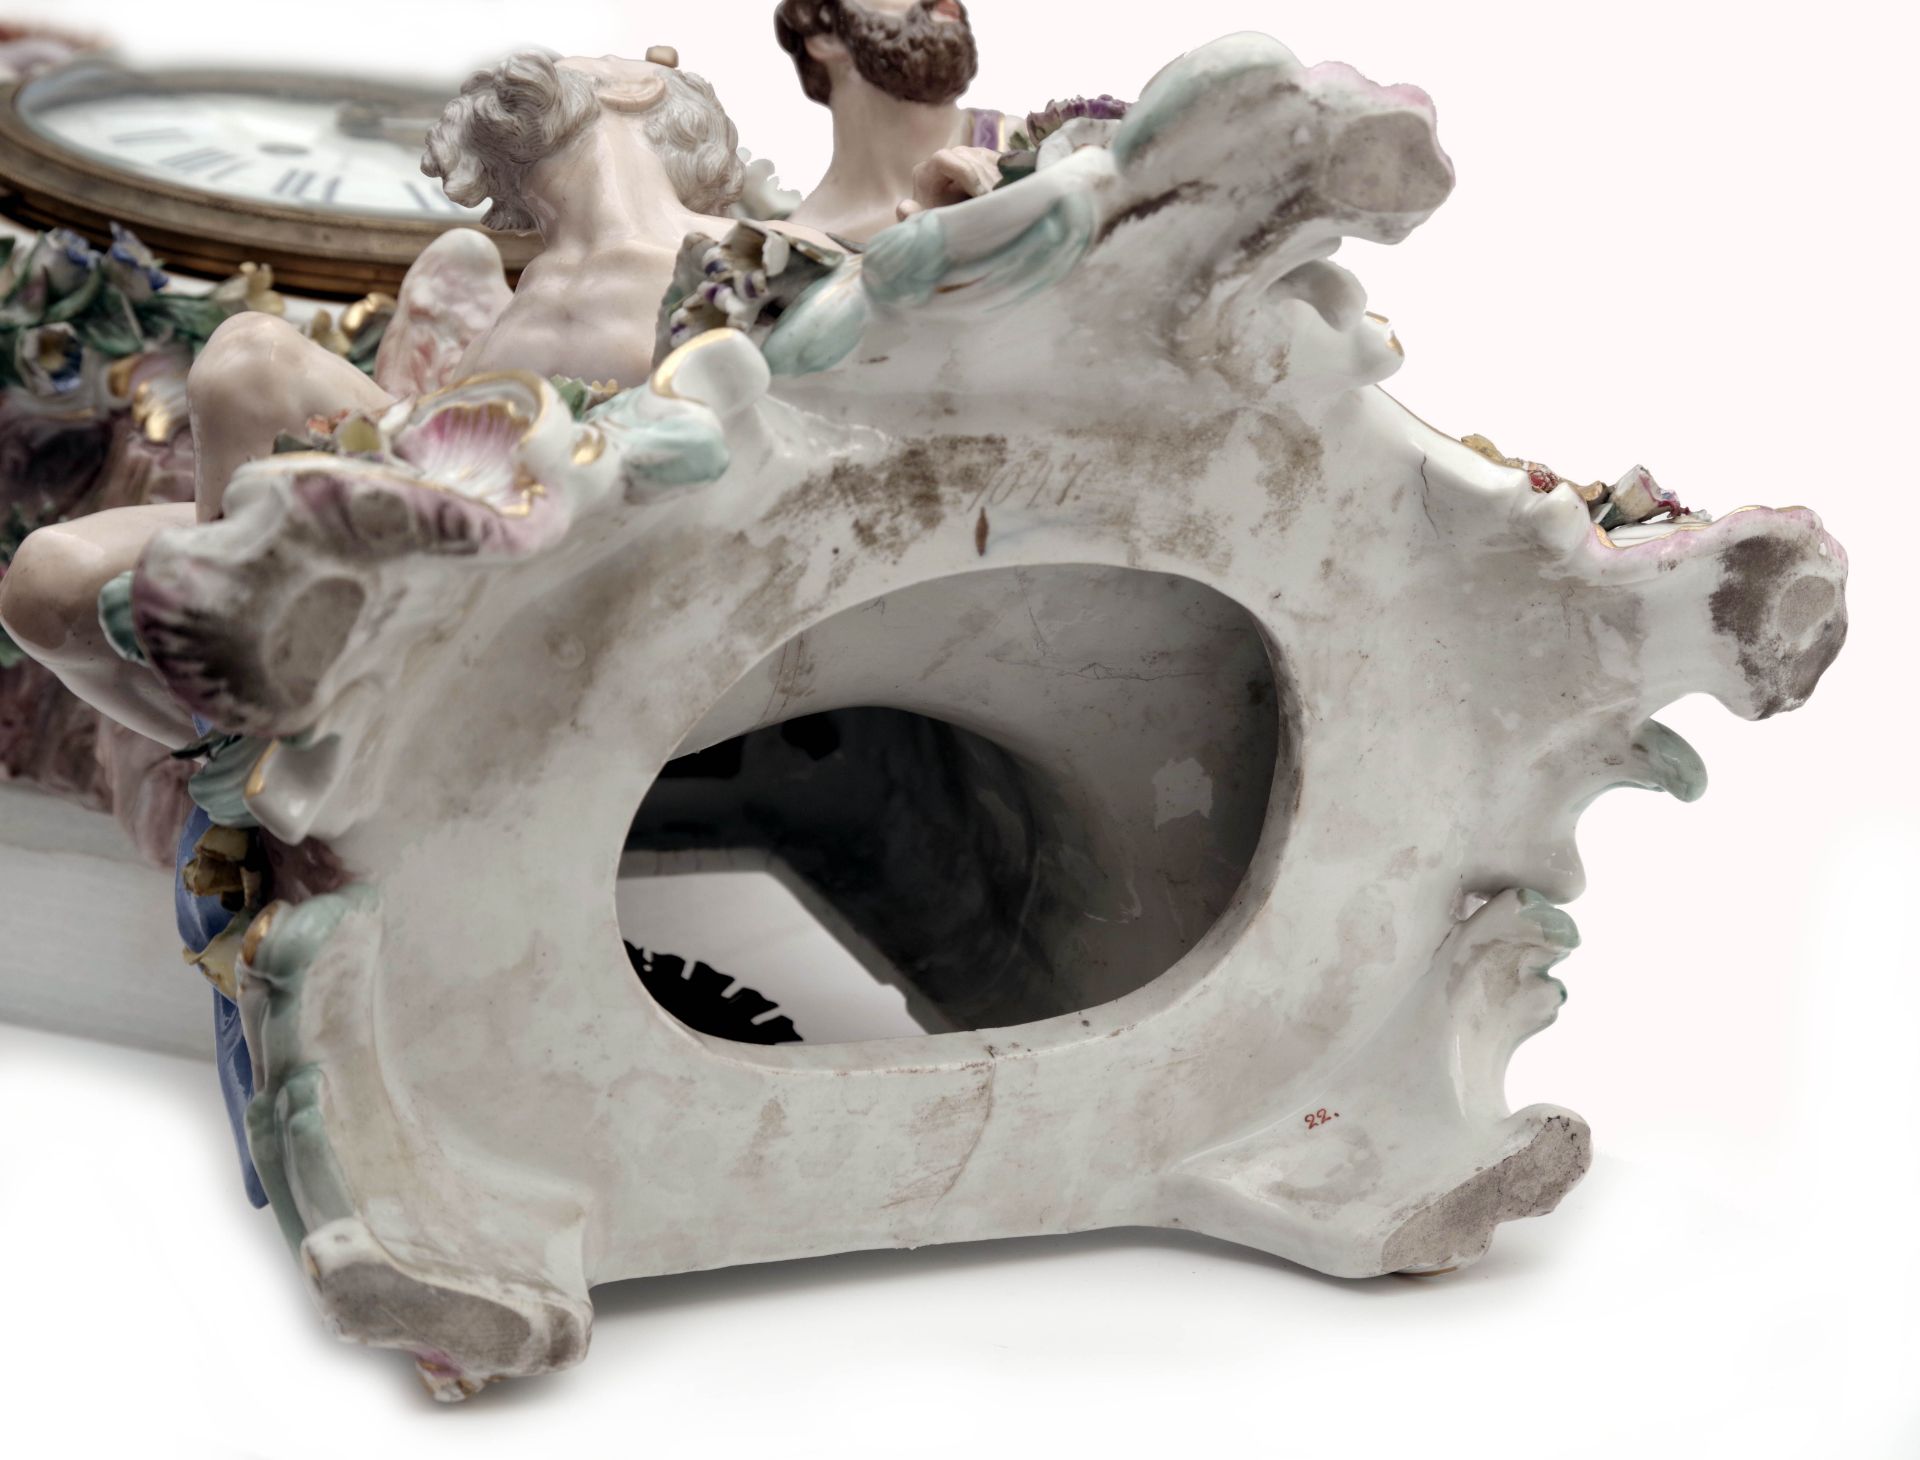 A Prometheus Porcelain Mantle Clock by Meissen - Image 8 of 9